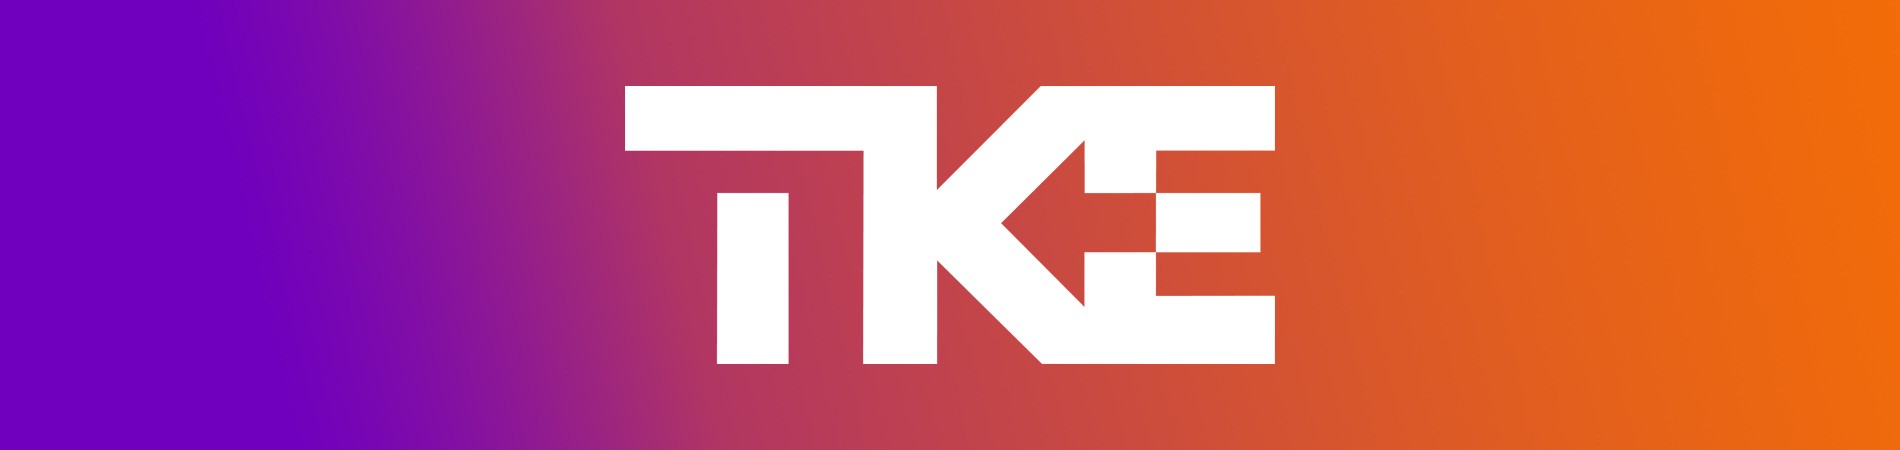 nouvelle marque TKE